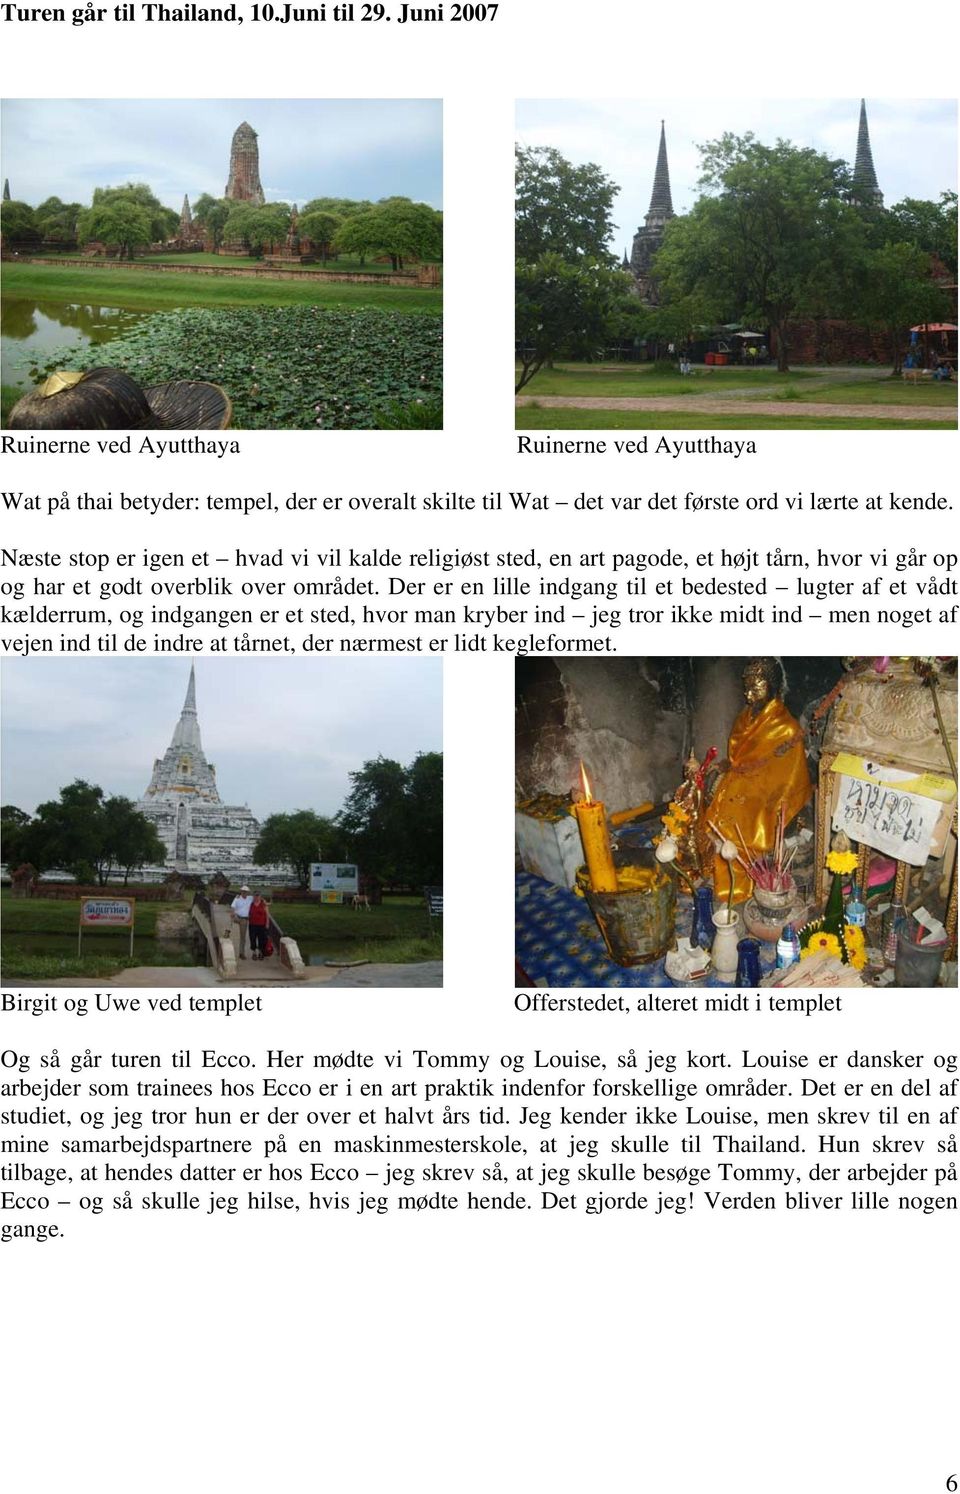 Turen går til Thailand, 10.Juni til 29. Juni Turen går til Thailand Juni 2007 Sammen med og Uwe - PDF Gratis download